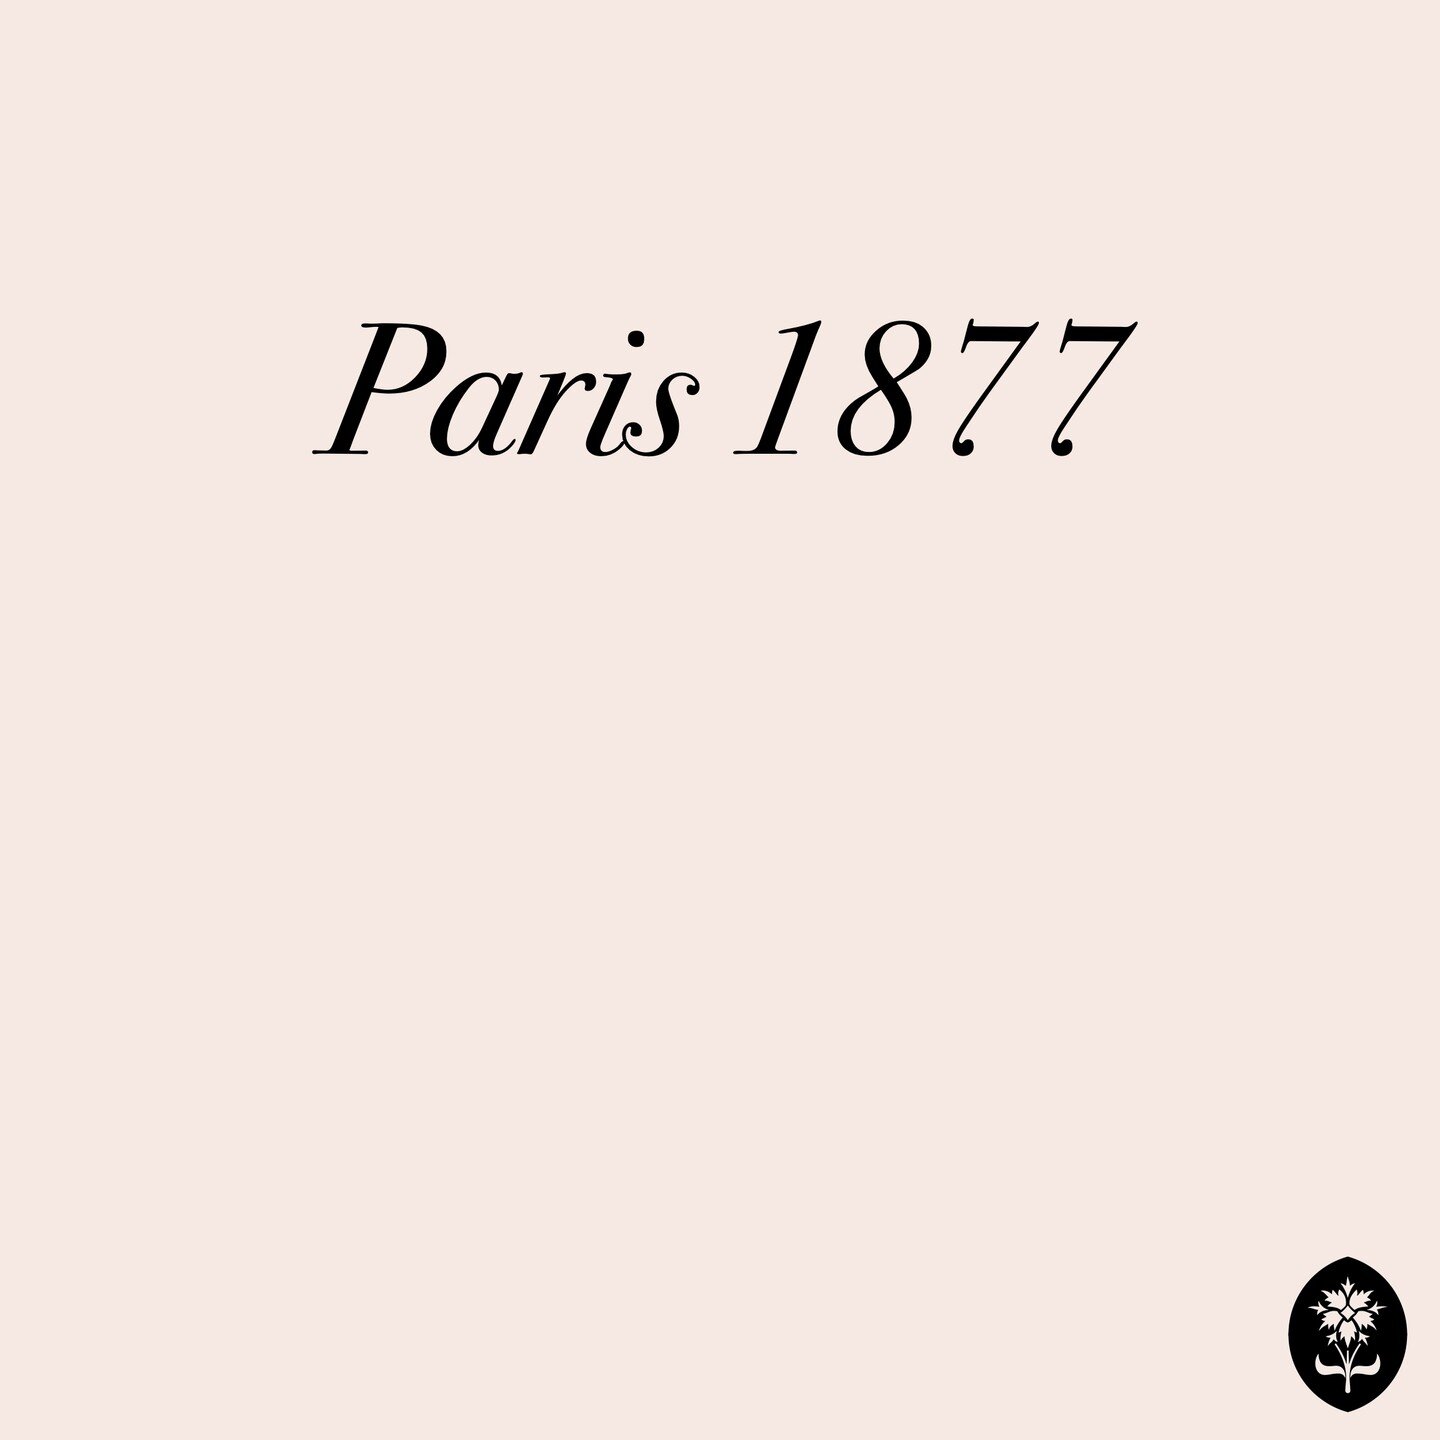 Erbe.
Die Zukunft ist in der Geschichte verwurzelt.

#eritage #heritagebrand #longhistory #marquehistorique #strongvalues #timeless #skincare #luxurycosmetics #madeinfrance #frenchluxury #trueluxury #since1877 #1877 #paris #🇫🇷